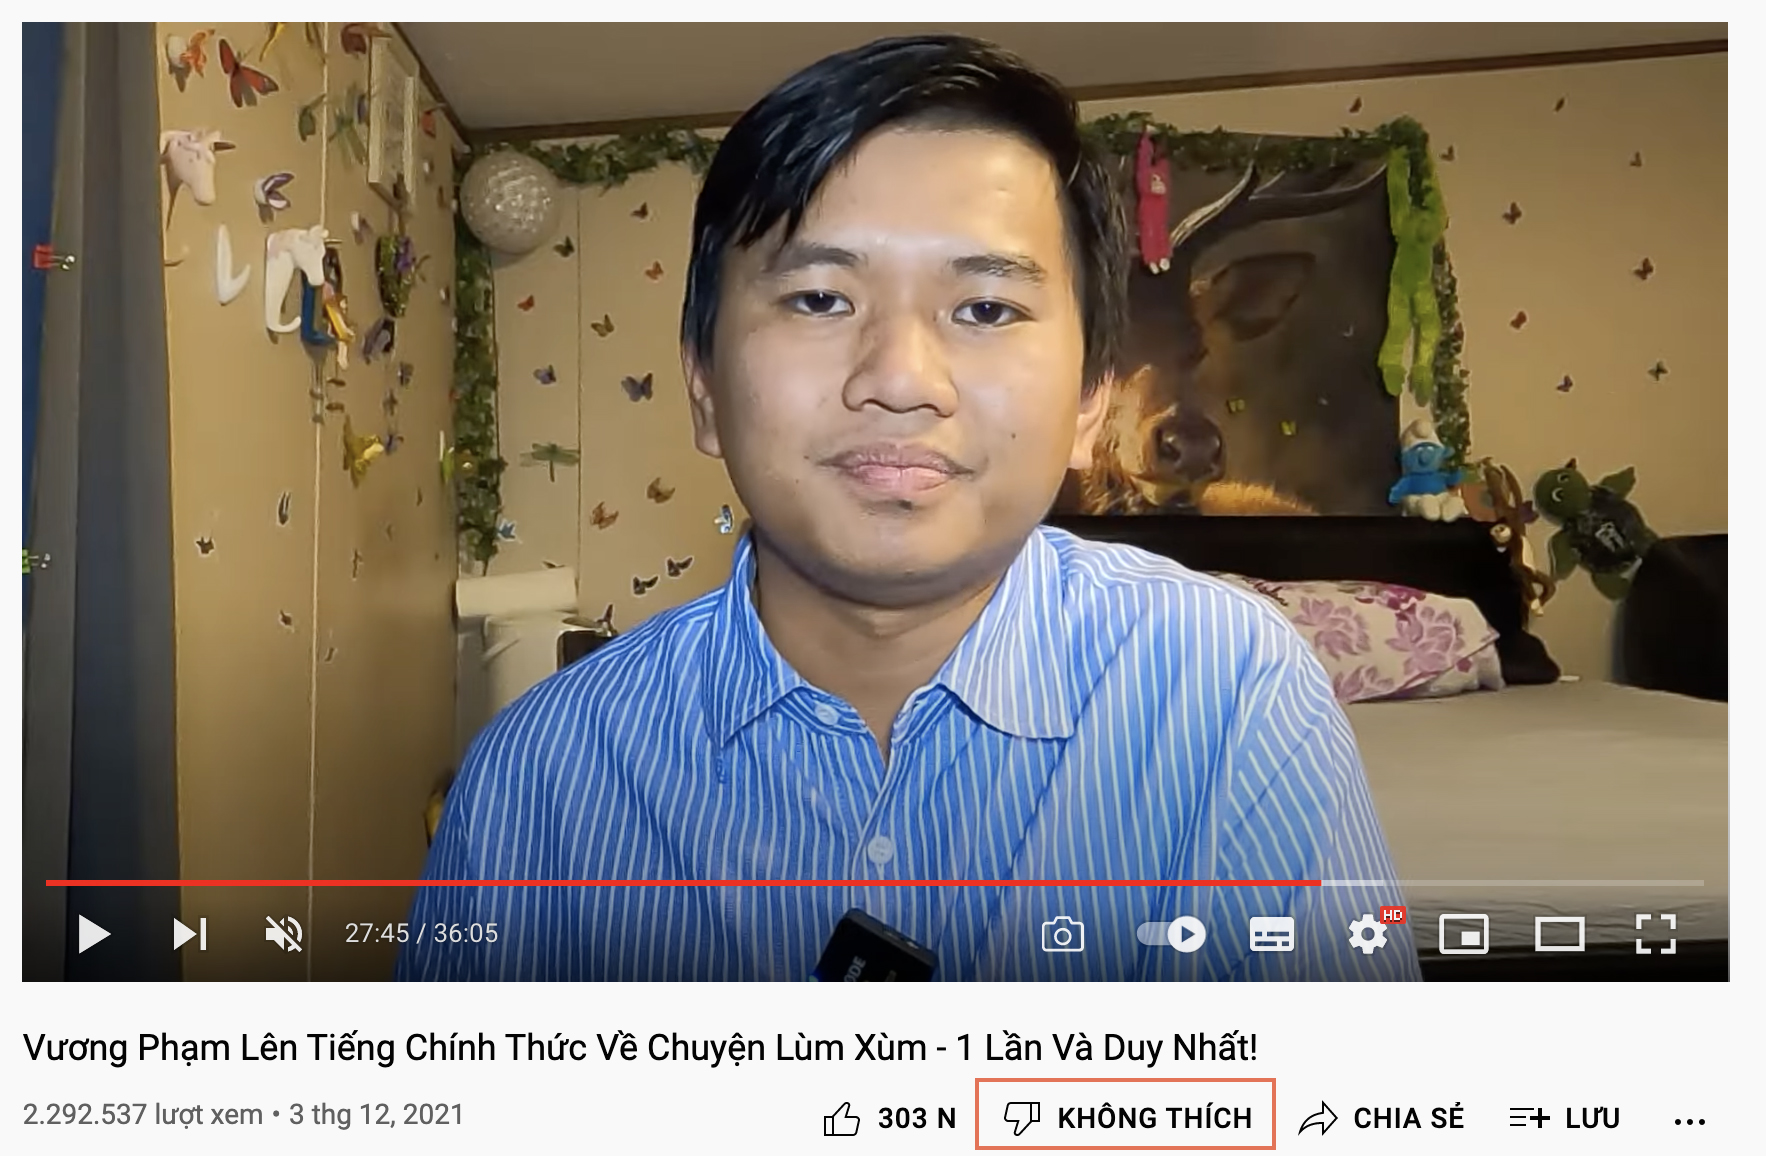 Netizen phát hiện chi tiết bất thường trong video Vương Phạm bóc phốt ông đá bào để bênh Khoa Pug, biết được sự thật lại càng choáng hơn - Ảnh 3.